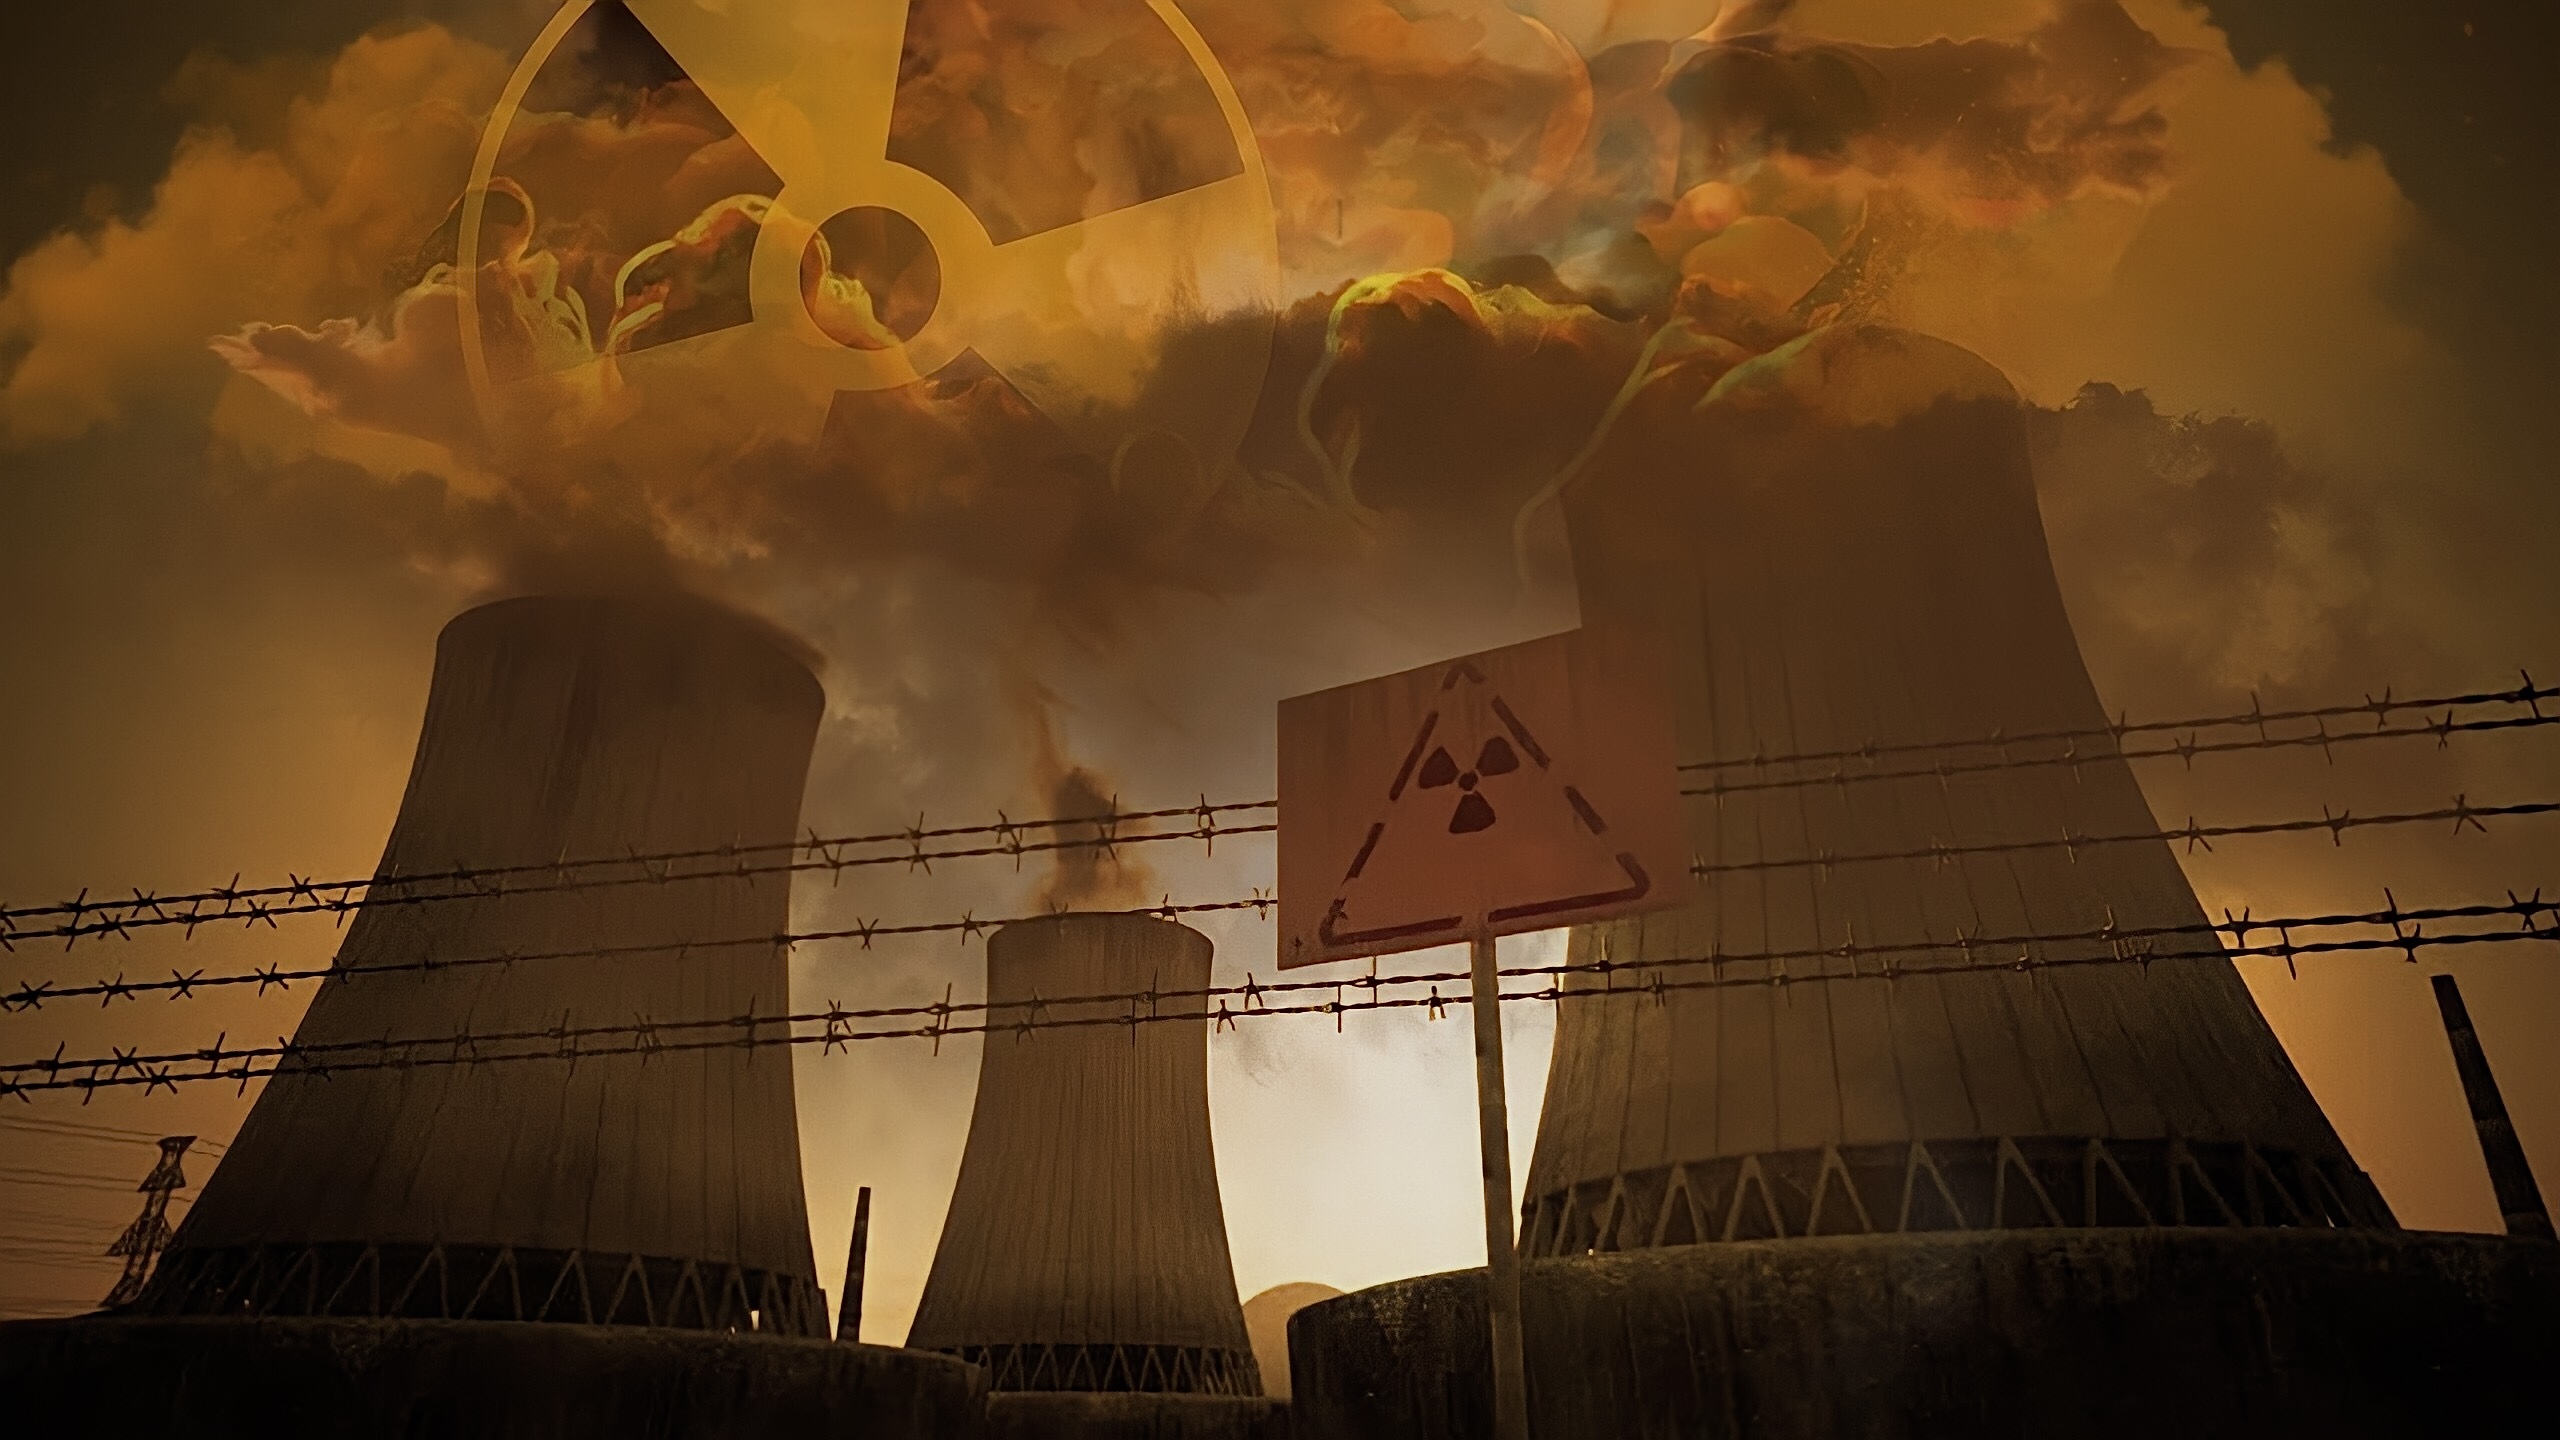 Ядерный взрыв аэс. Запорожская атомная электростанция зона радиации. Чернобыльская катастрофа радиоактивное загрязнение. АЭС Чернобыль загрязнение окружающей среды. АЭС Чернобыль радиация.